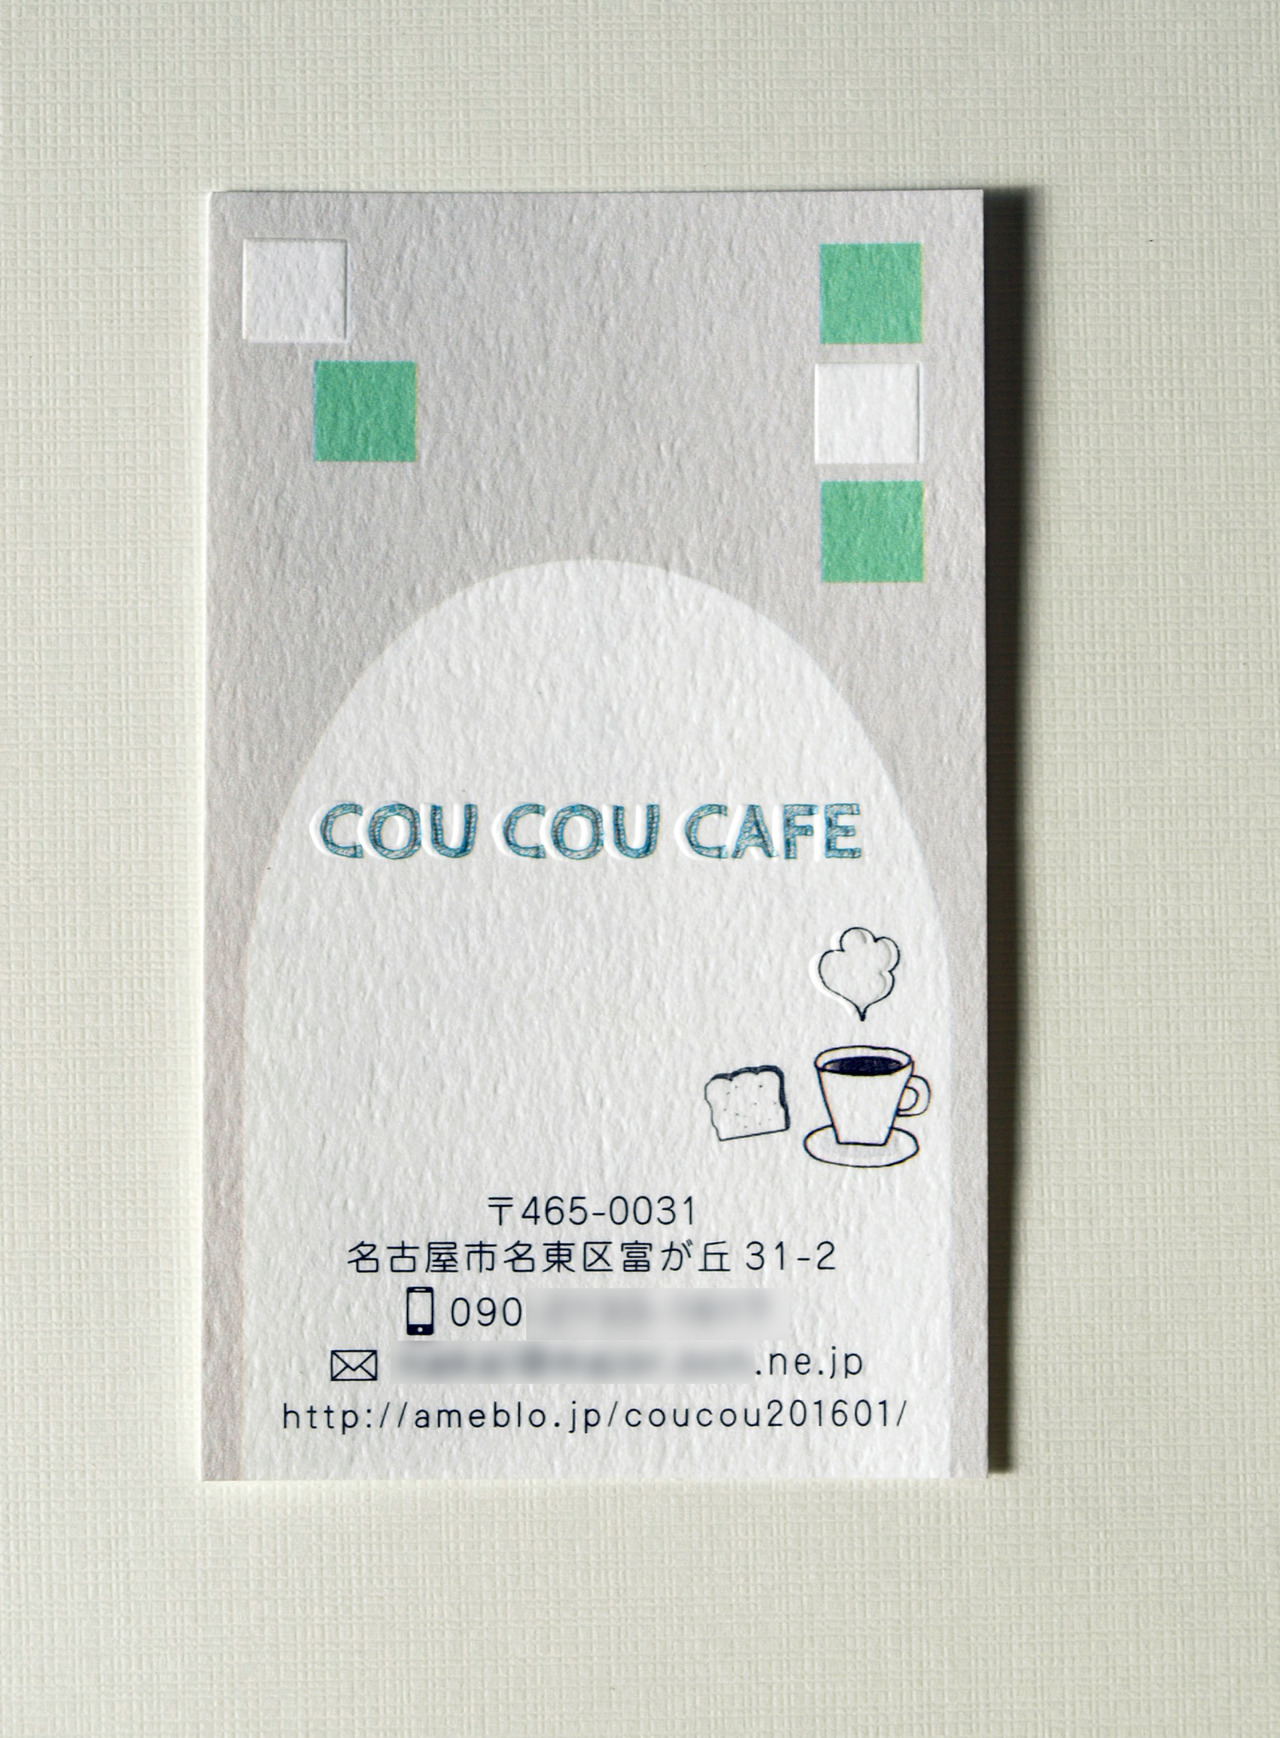 名東区のカフェのショップカード★